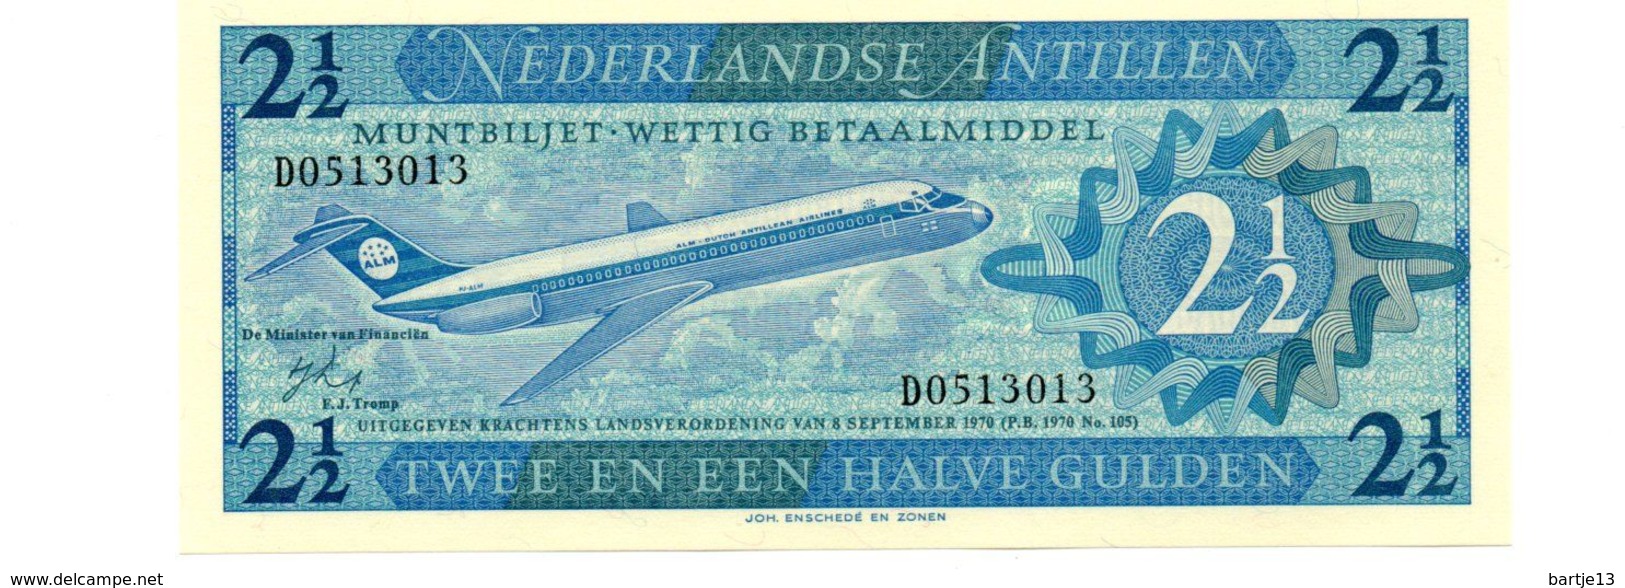 NEDERLANDSE ANTILLEN 2 1/2 GULDEN PICK 21a UNCIRCULATED - Niederländische Antillen (...-1986)